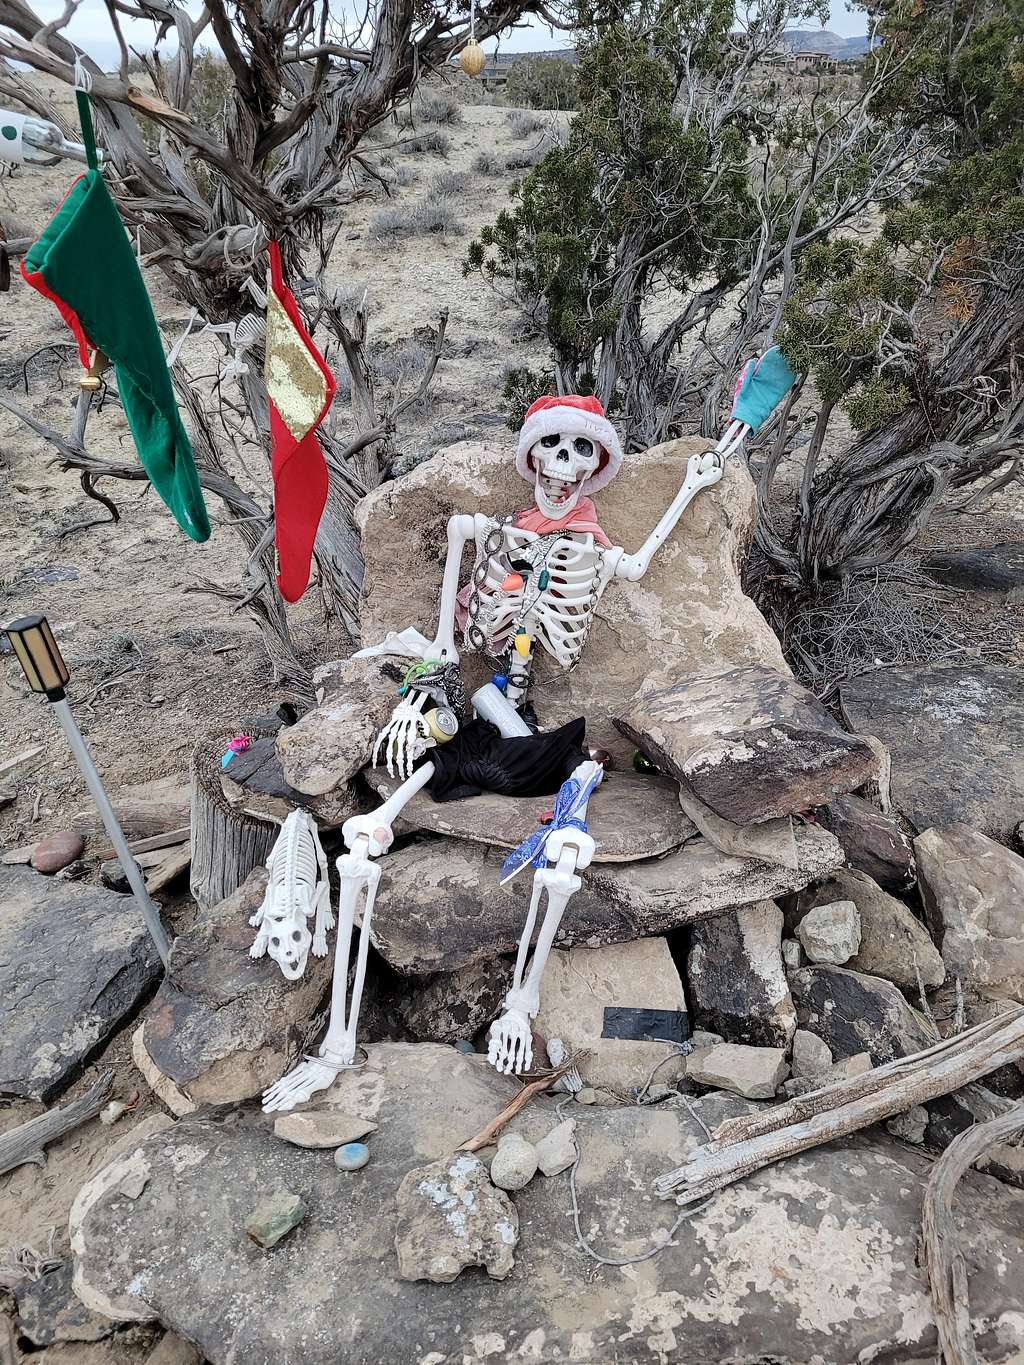 Mr. Bones greets us on the Redlands Mesa Trails